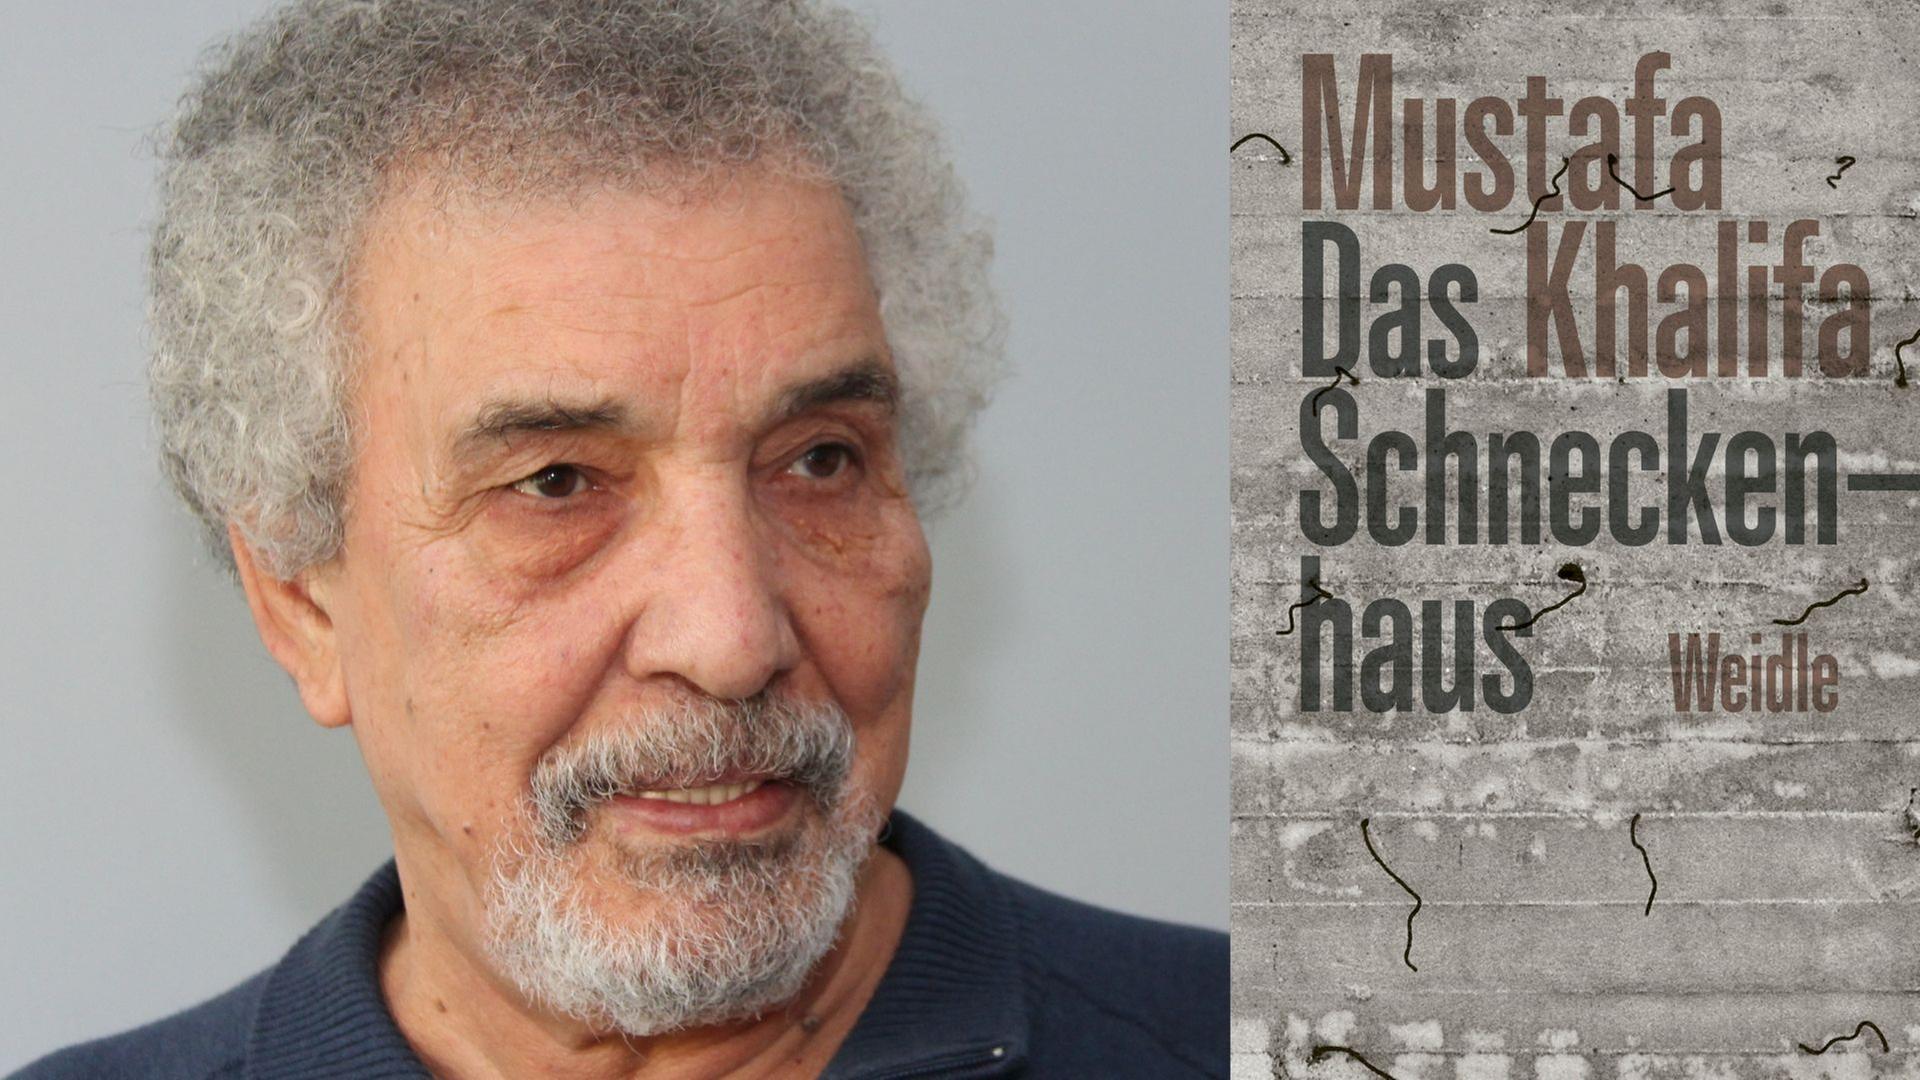 Zu sehen ist der Autor Mustafa Khalif und das Cover seines Buches "Das Schneckenhaus. Tagebuch eines Voyeurs".